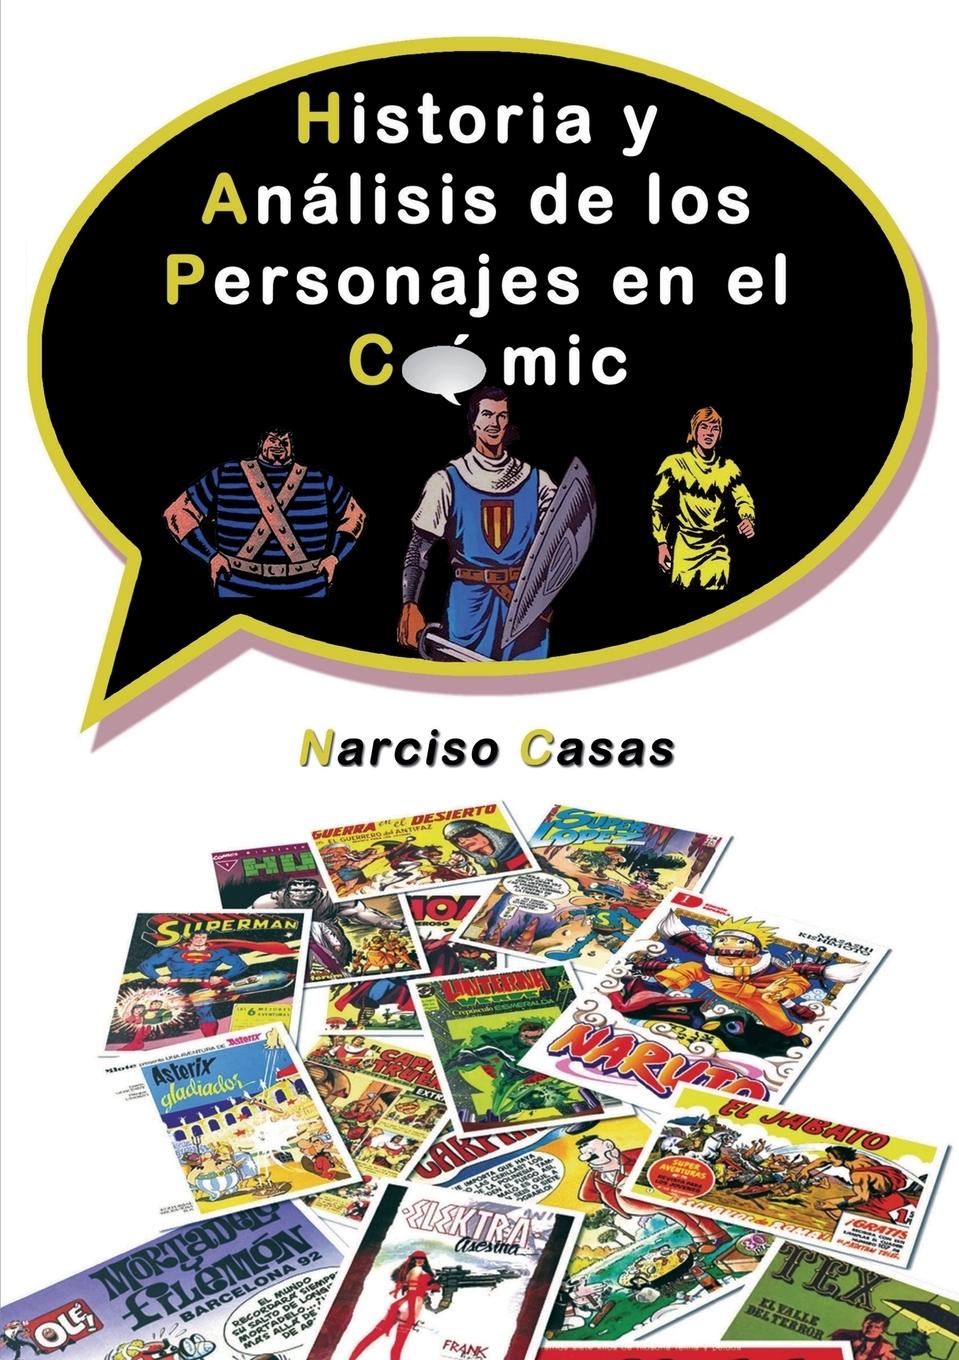 Historia y Análisis de los Personajes en el Cómic - Narciso Casas